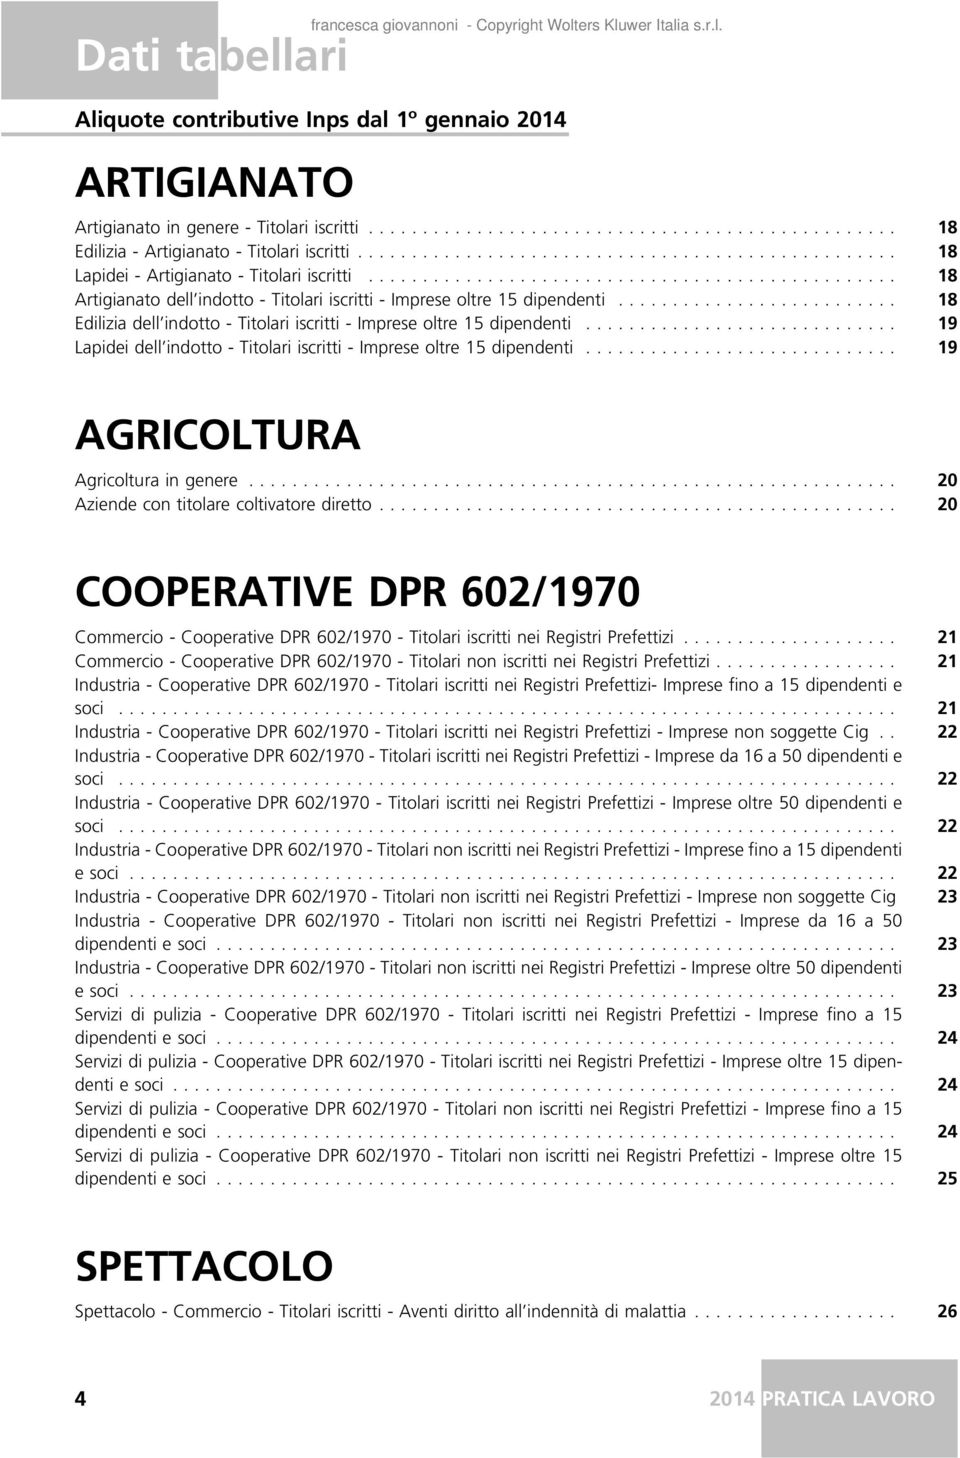 .... 19 Lapidei dell indotto - Titolari iscritti - Imprese oltre 15 dipendenti..... 19 AGRICOLTURA Agricoltura in genere..... 20 Aziende con titolare coltivatore diretto.